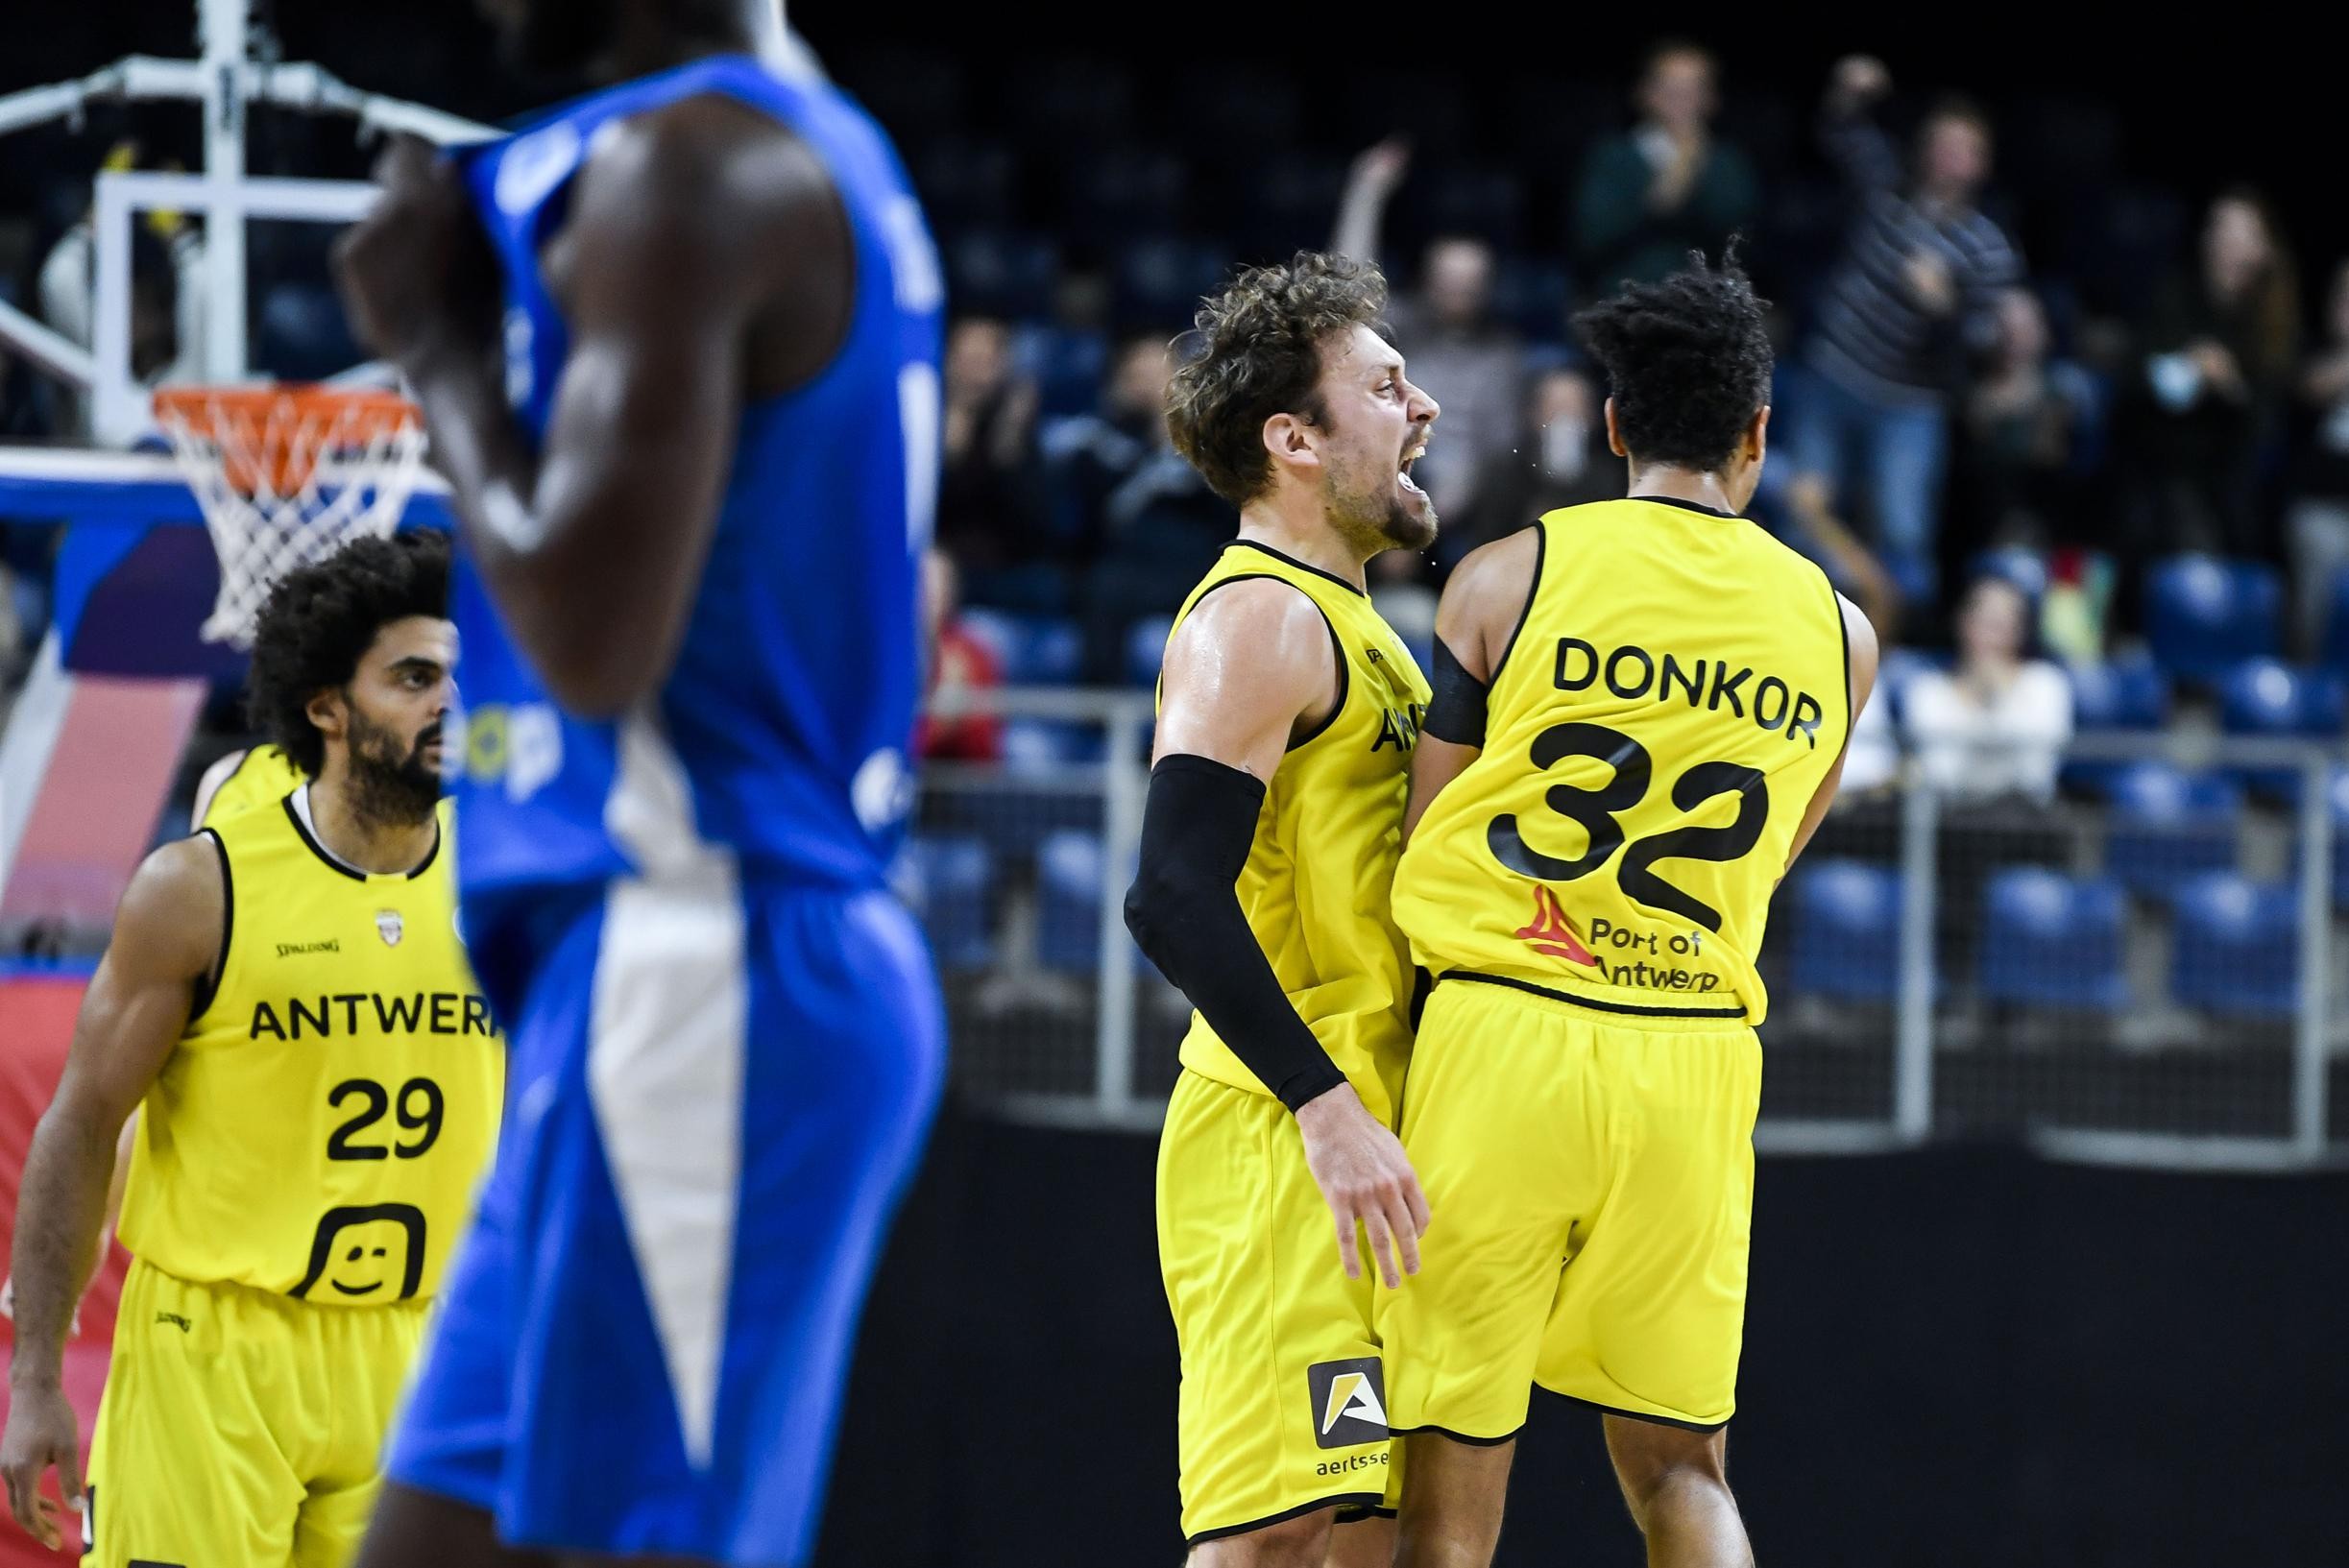 Antwerp Giants - Kiev van woensdag in FIBA Europe Cup uitgesteld: Oekraïeners kampen met corona-uitbraak